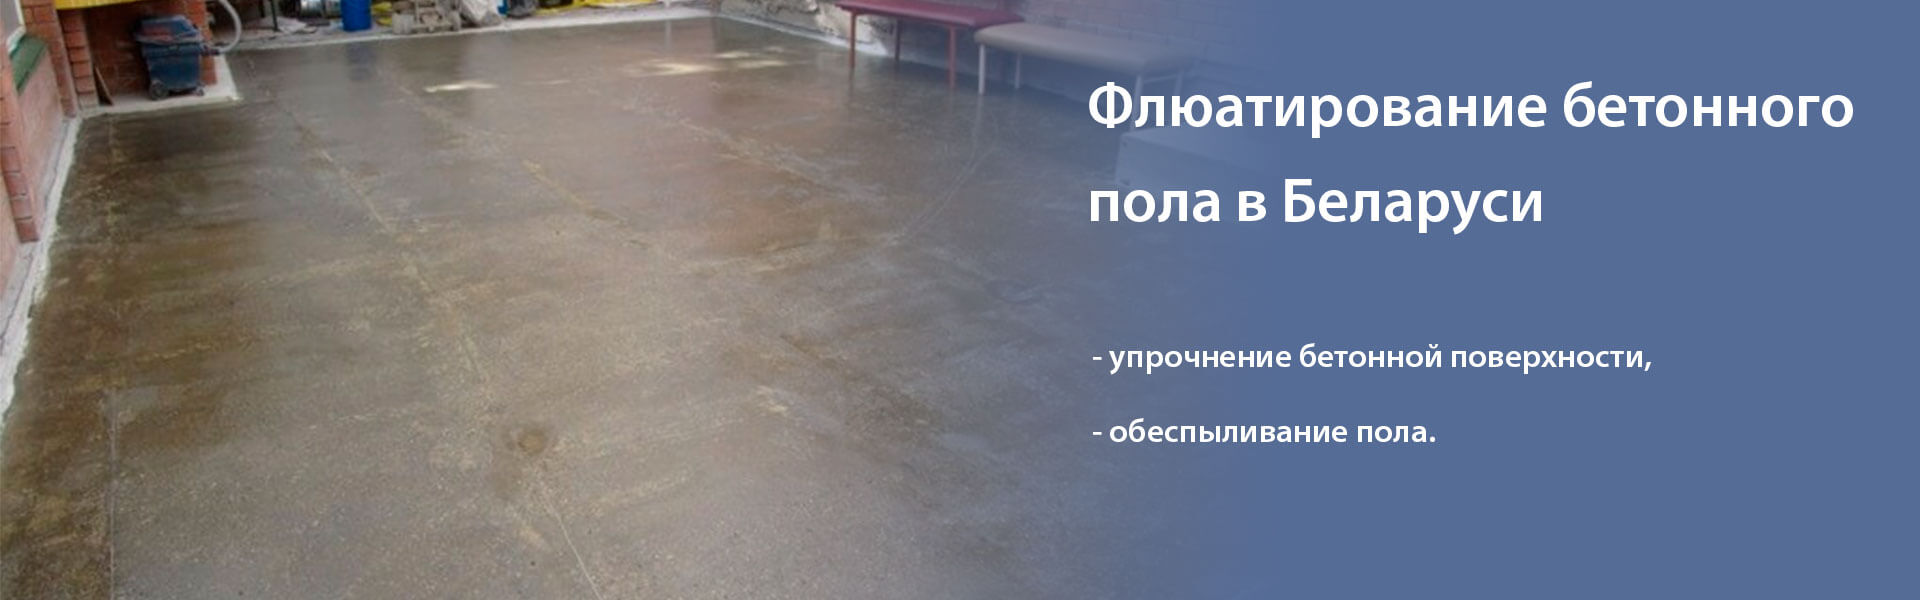 Флюатирование бетонного пола - что важно знать о технологии и услуги от официального представителя в Минске